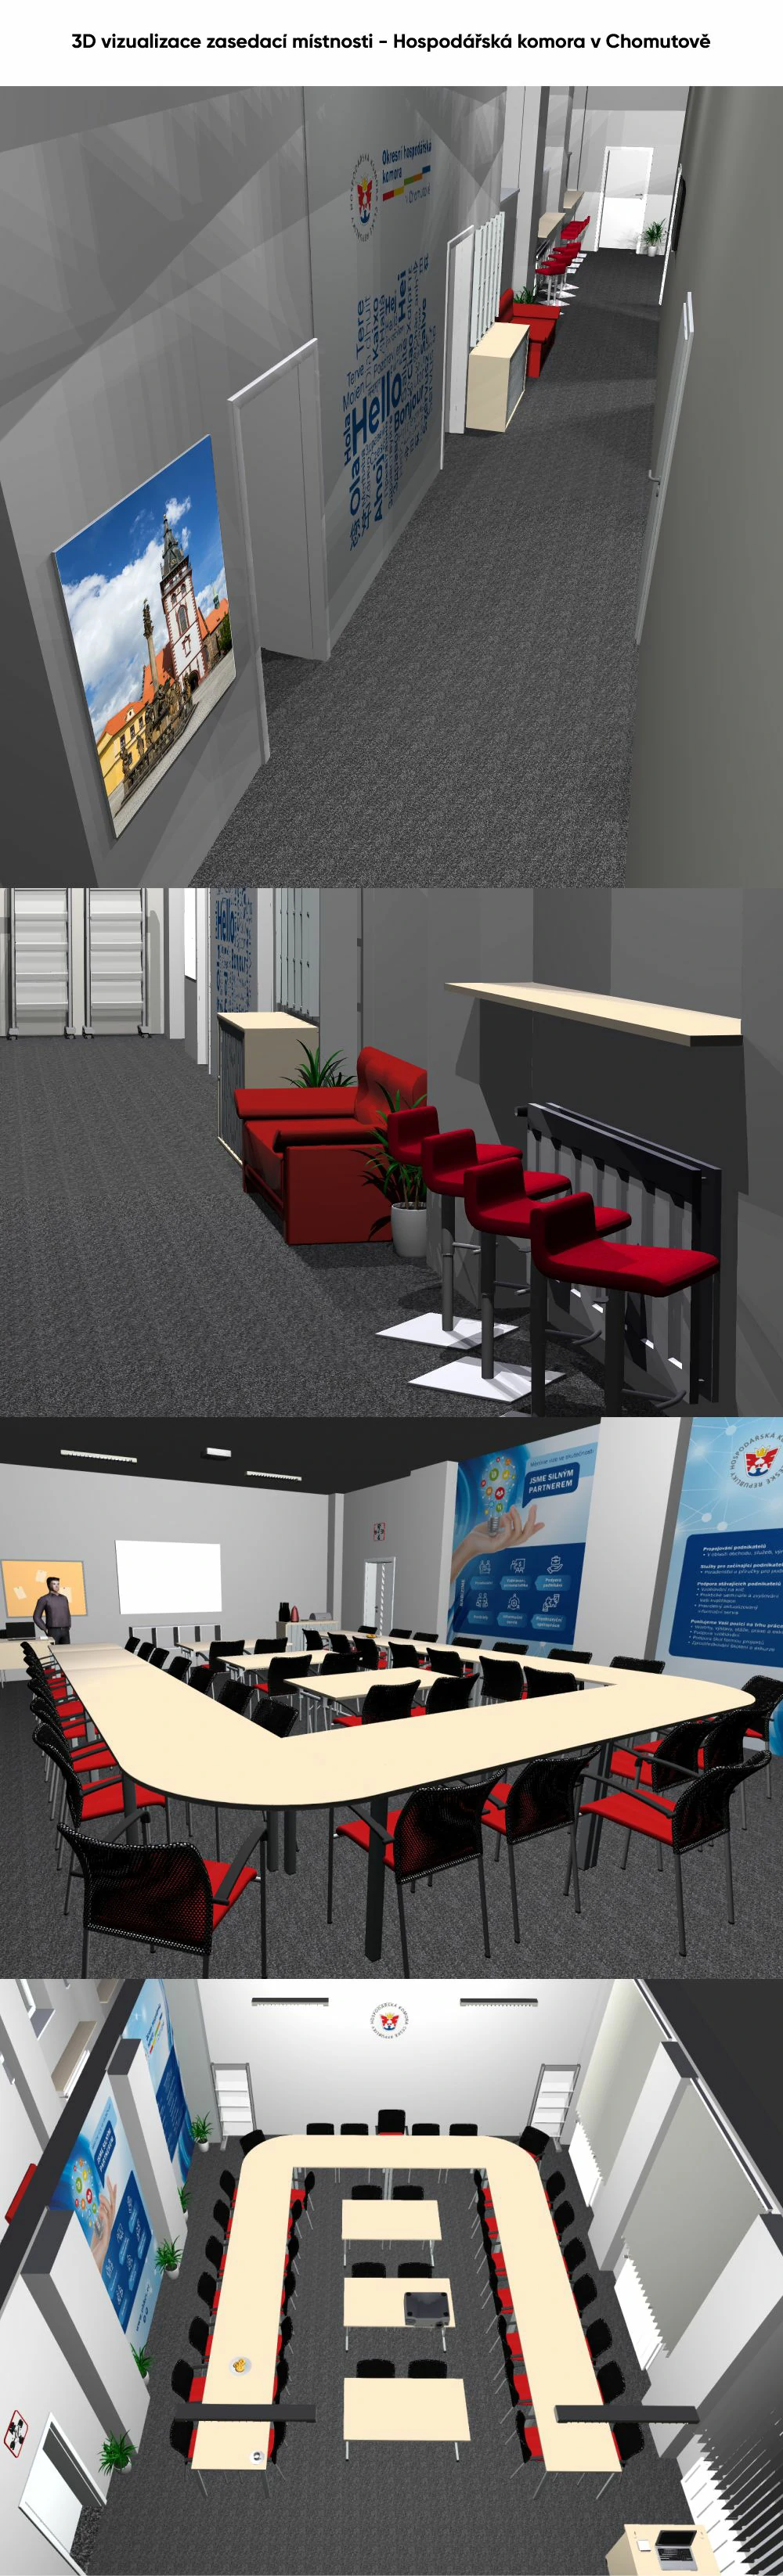 DEFT Design Reference - Hospodářská komora Chomutov - zasedací místnost - 3D vizualizace